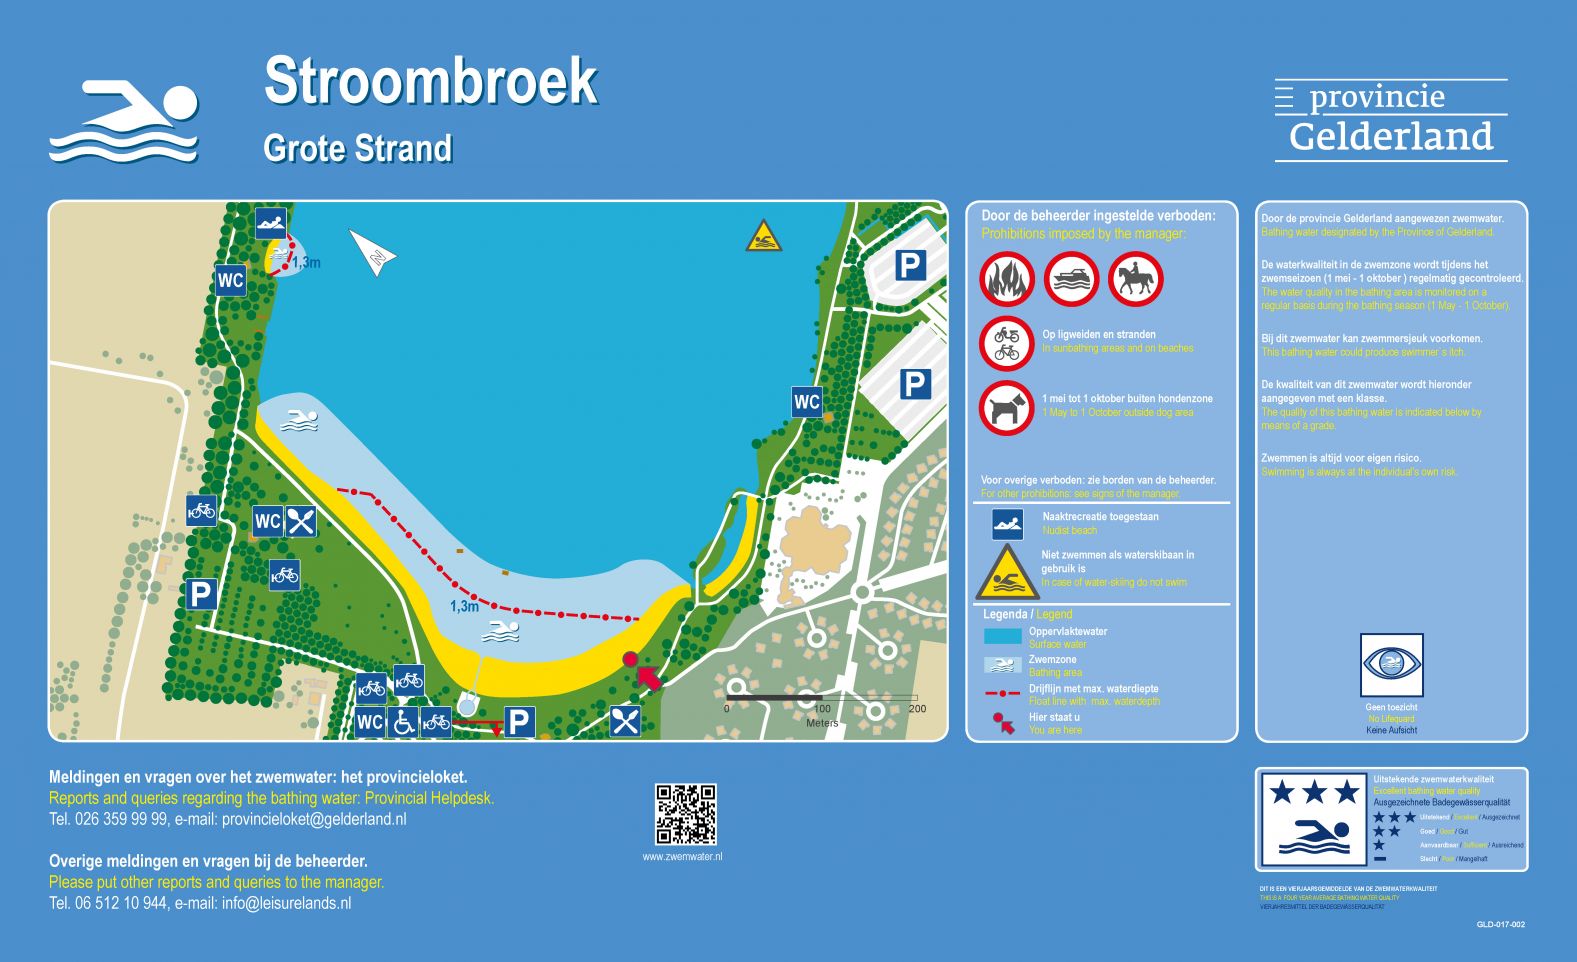 Het informatiebord bij zwemlocatie Stroombroek Grote Strand